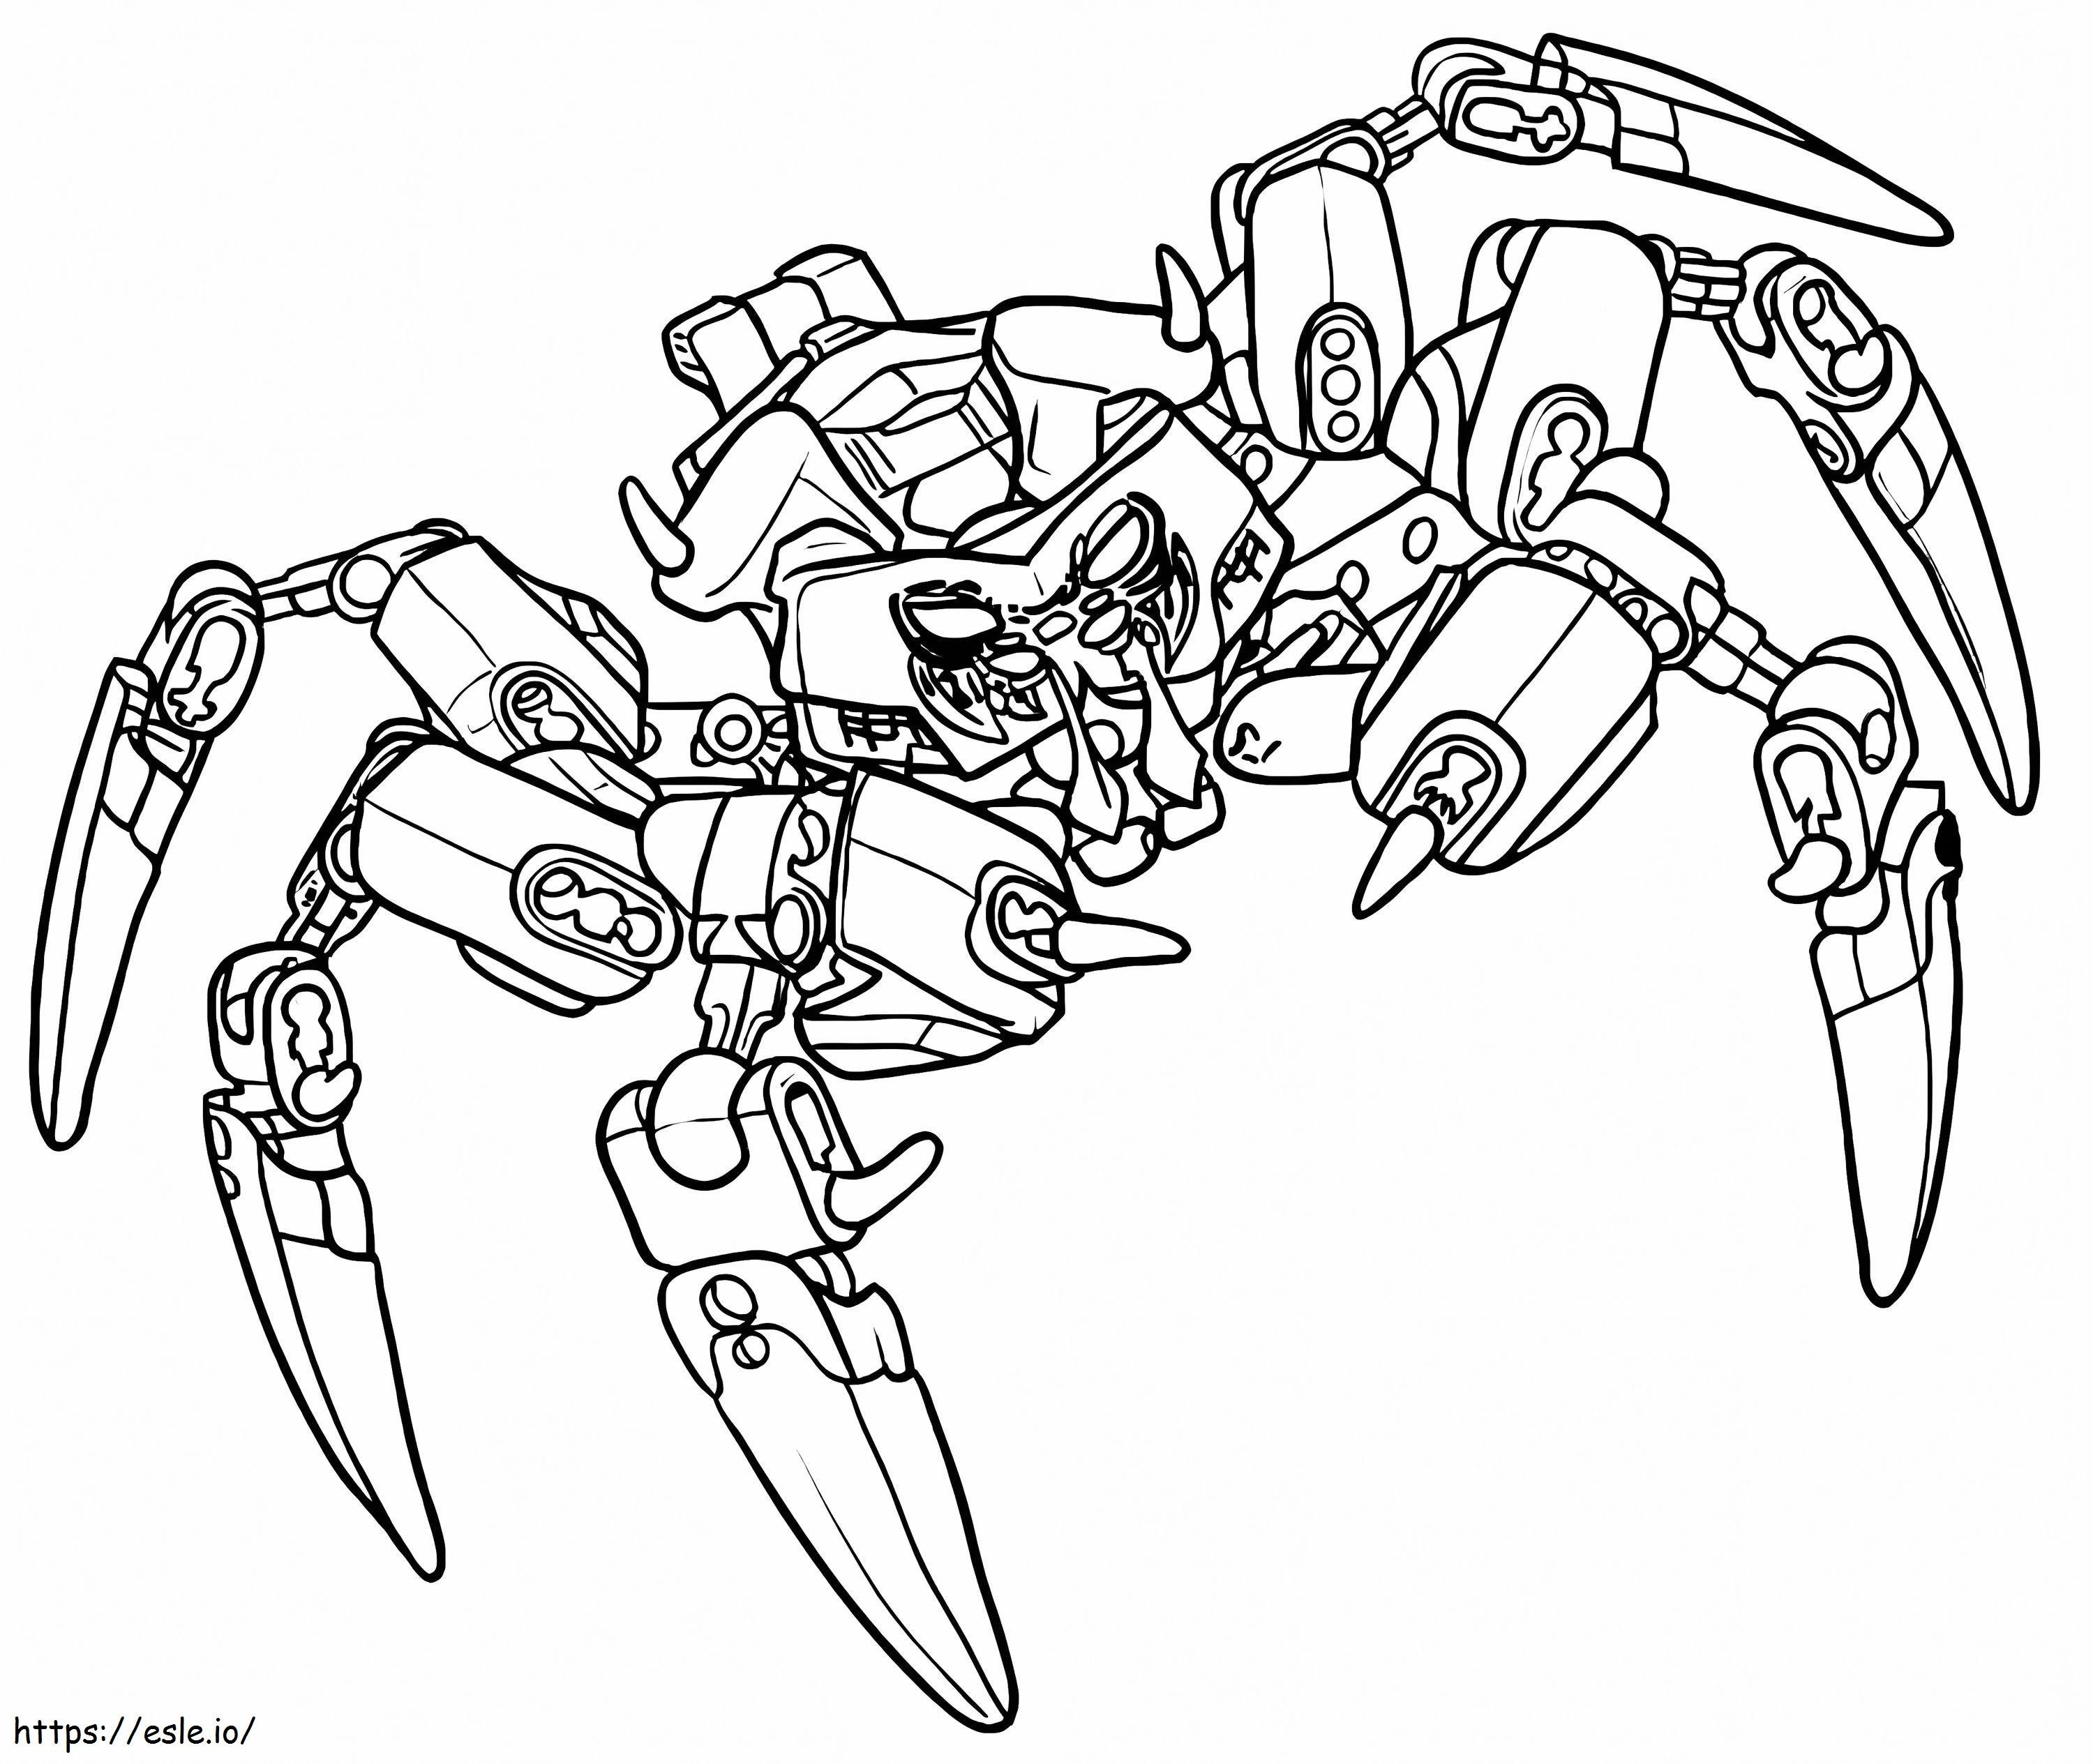 El señor de las arañas calaveras Bionicle para colorear